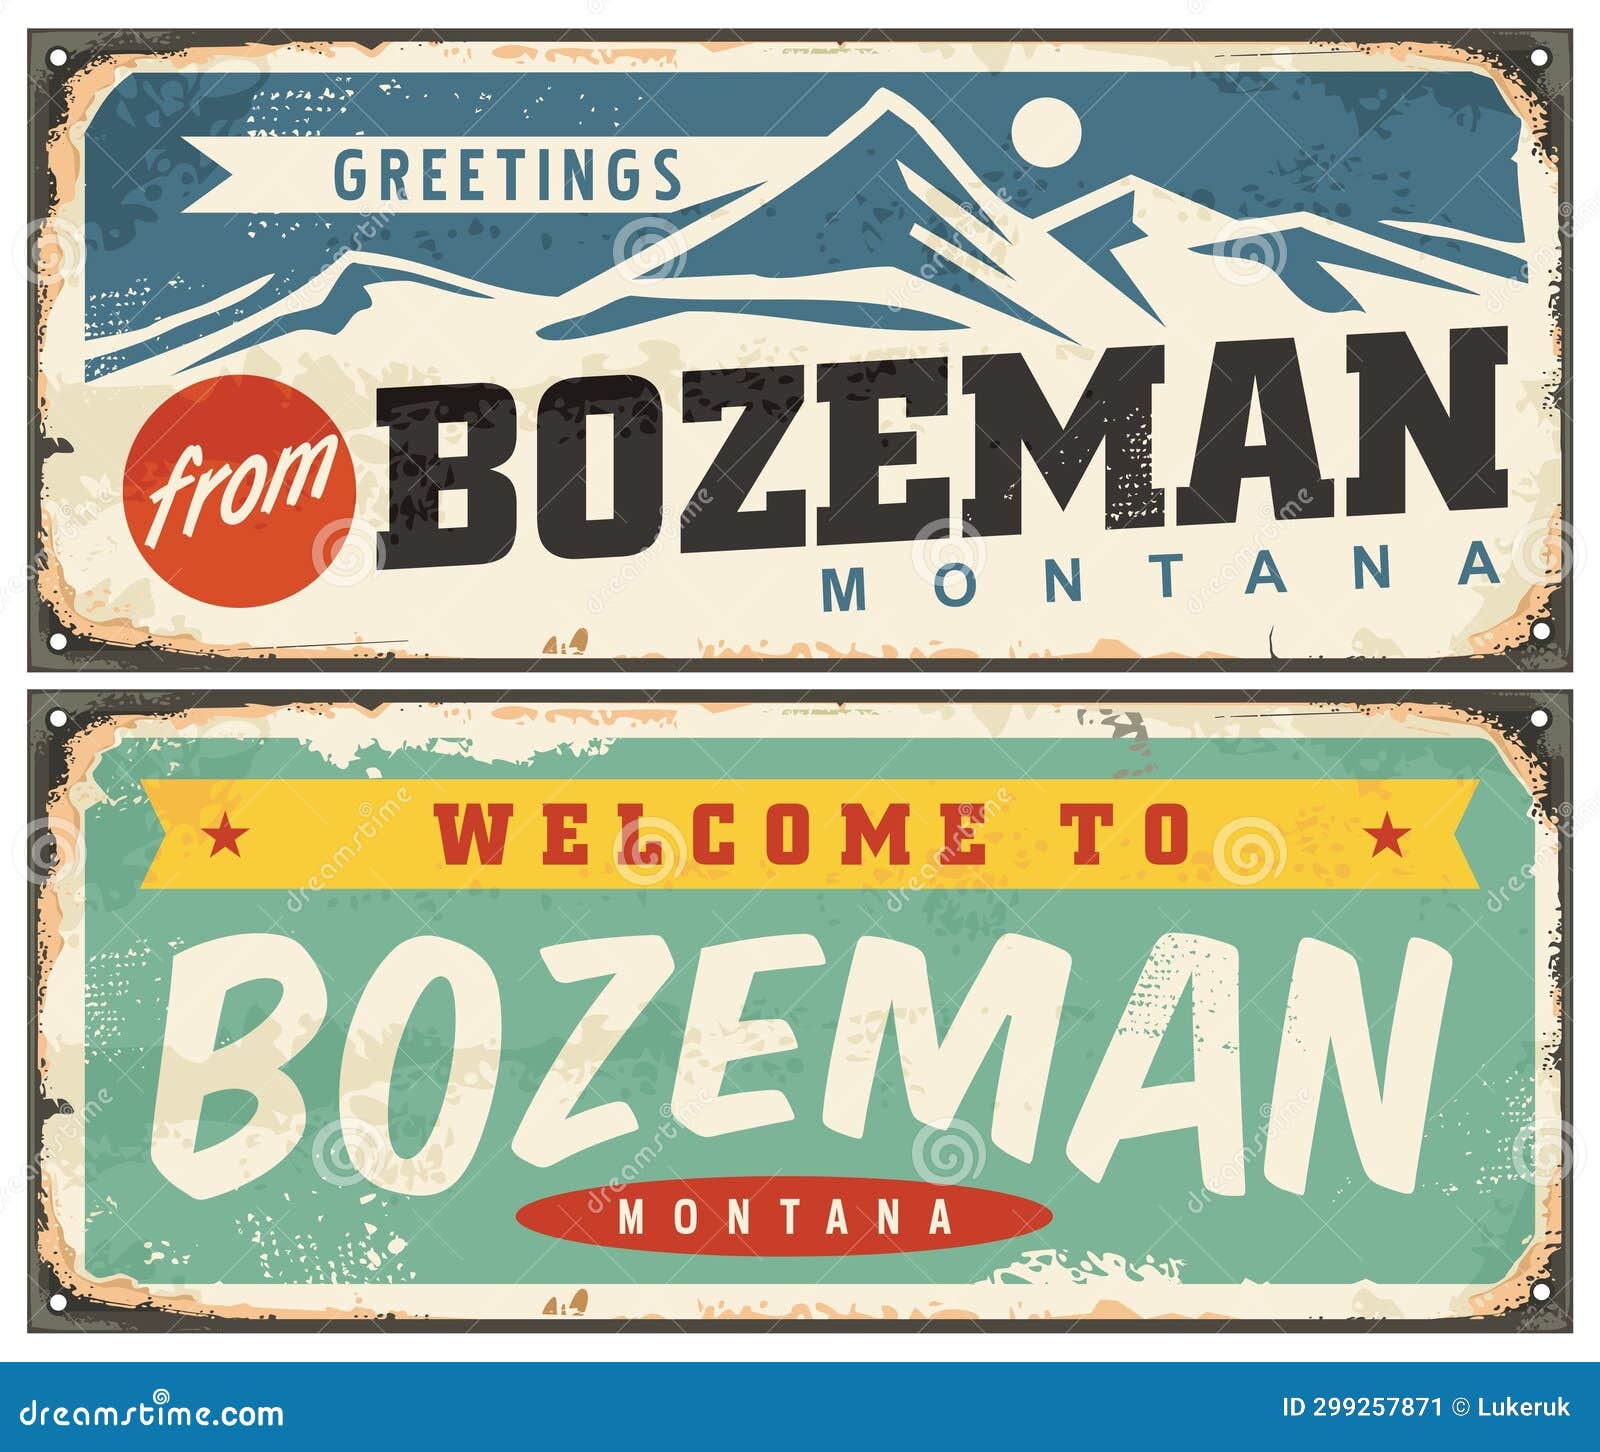 welcome to bozeman montana retro signs set